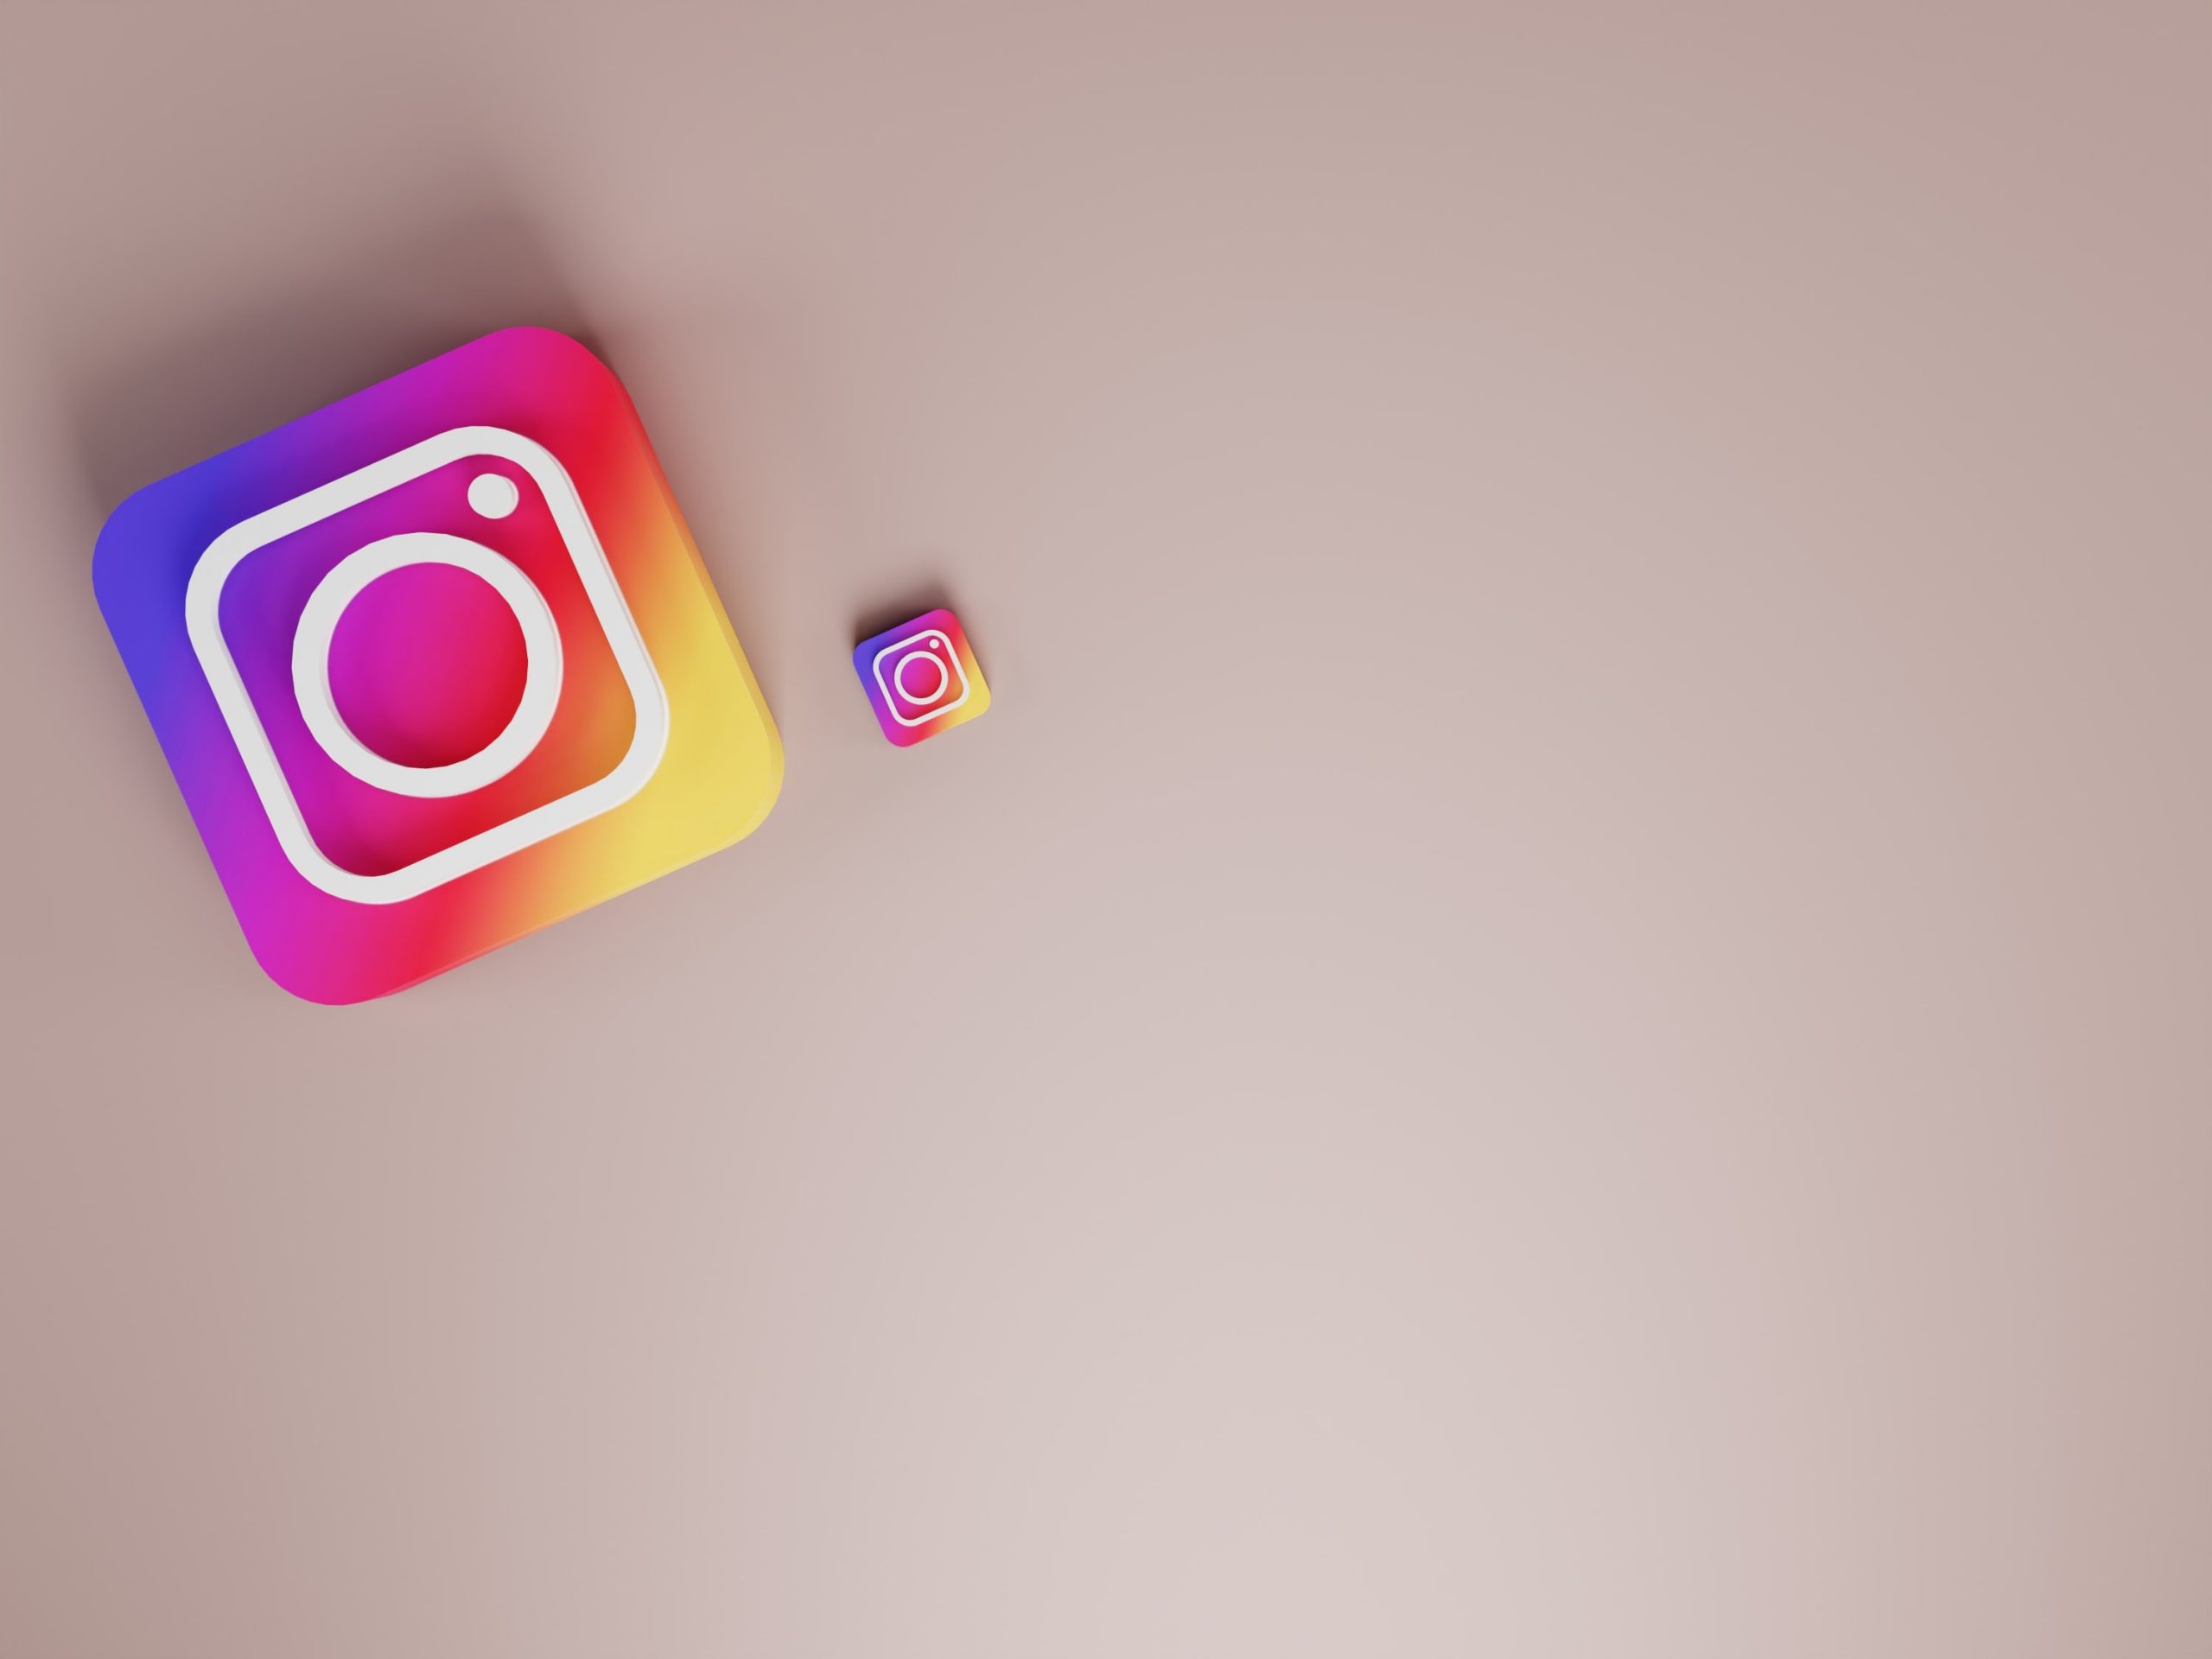 Công cụ tải về Instagram Story hiện đại giúp bạn tiết kiệm thời gian và tăng tính tiện lợi trong quá trình tải nội dung. Với giao diện trực quan, bạn có thể tải nhiều ảnh và video cùng lúc với tốc độ nhanh chóng và đảm bảo an toàn cho dữ liệu cá nhân của mình.